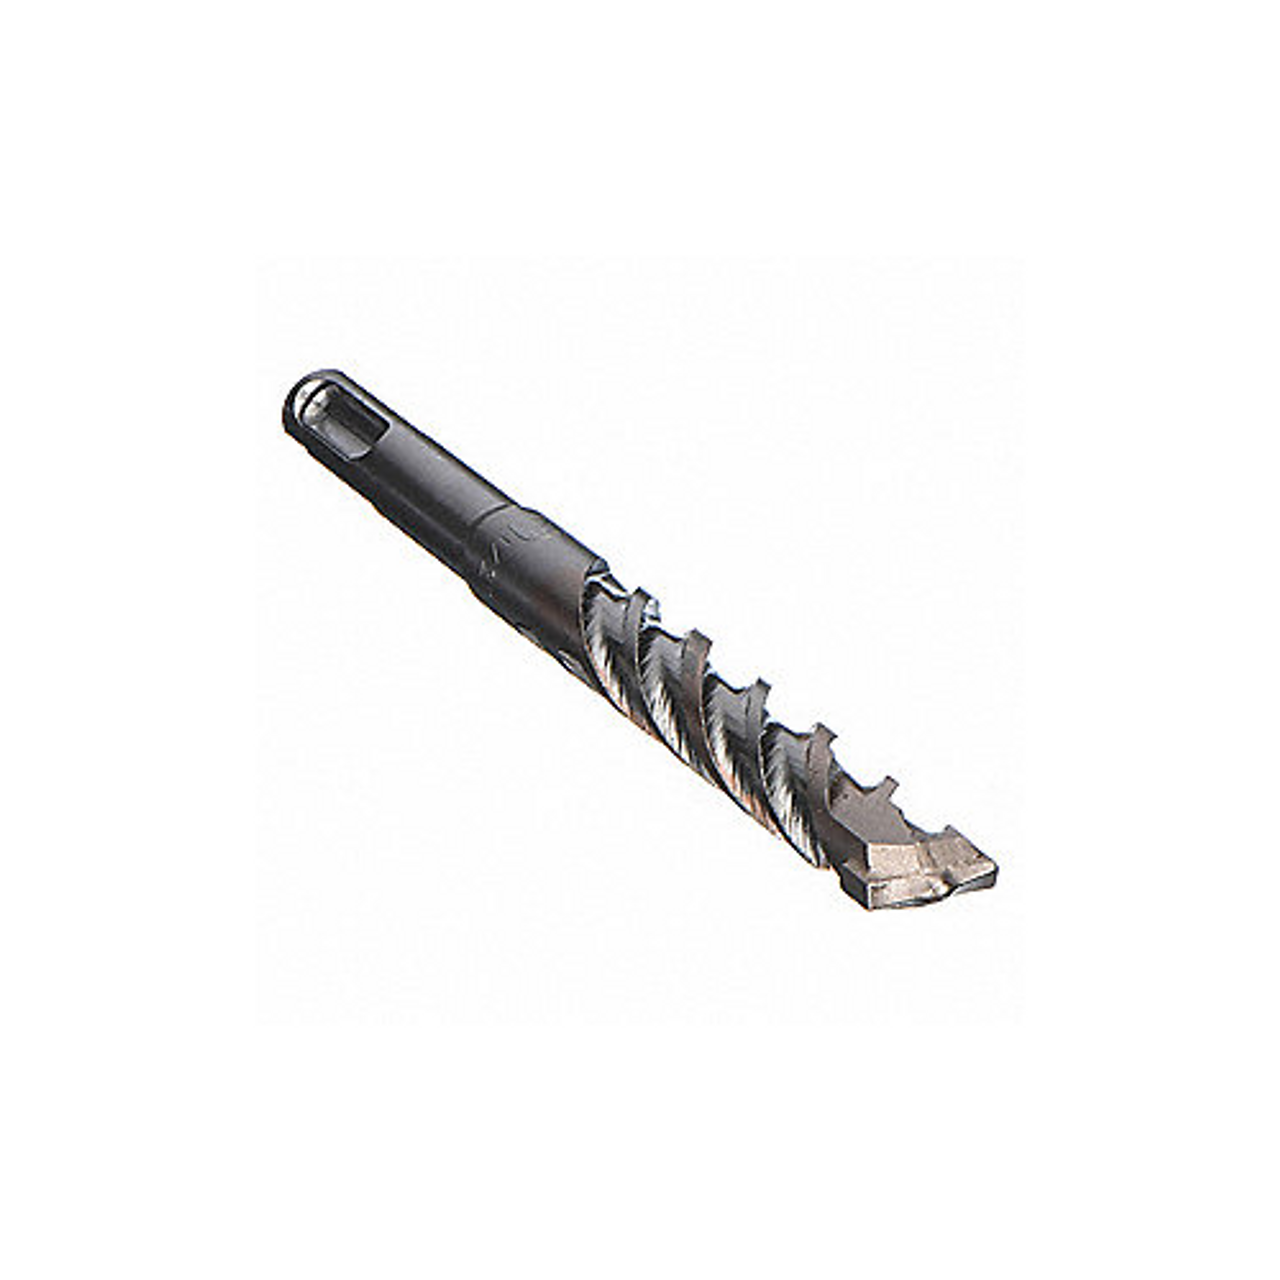 Tru Cut 25011 1/4" X 9" X 11" SDS Plus Carbide Tipped Hammer Drill Bit